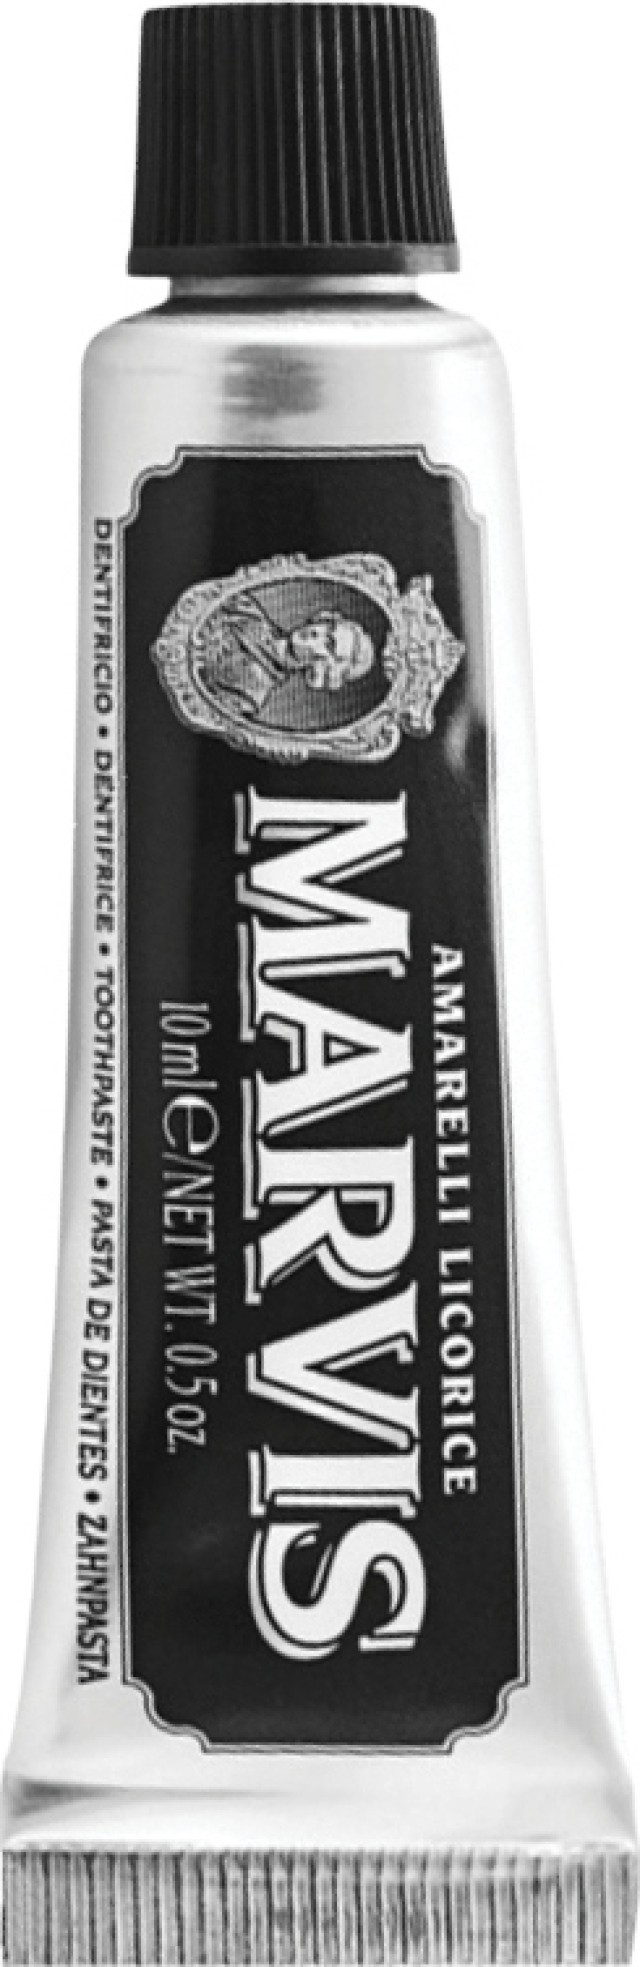 Μarvis Οδοντόκρεμα Amarelli Licorice 10ml